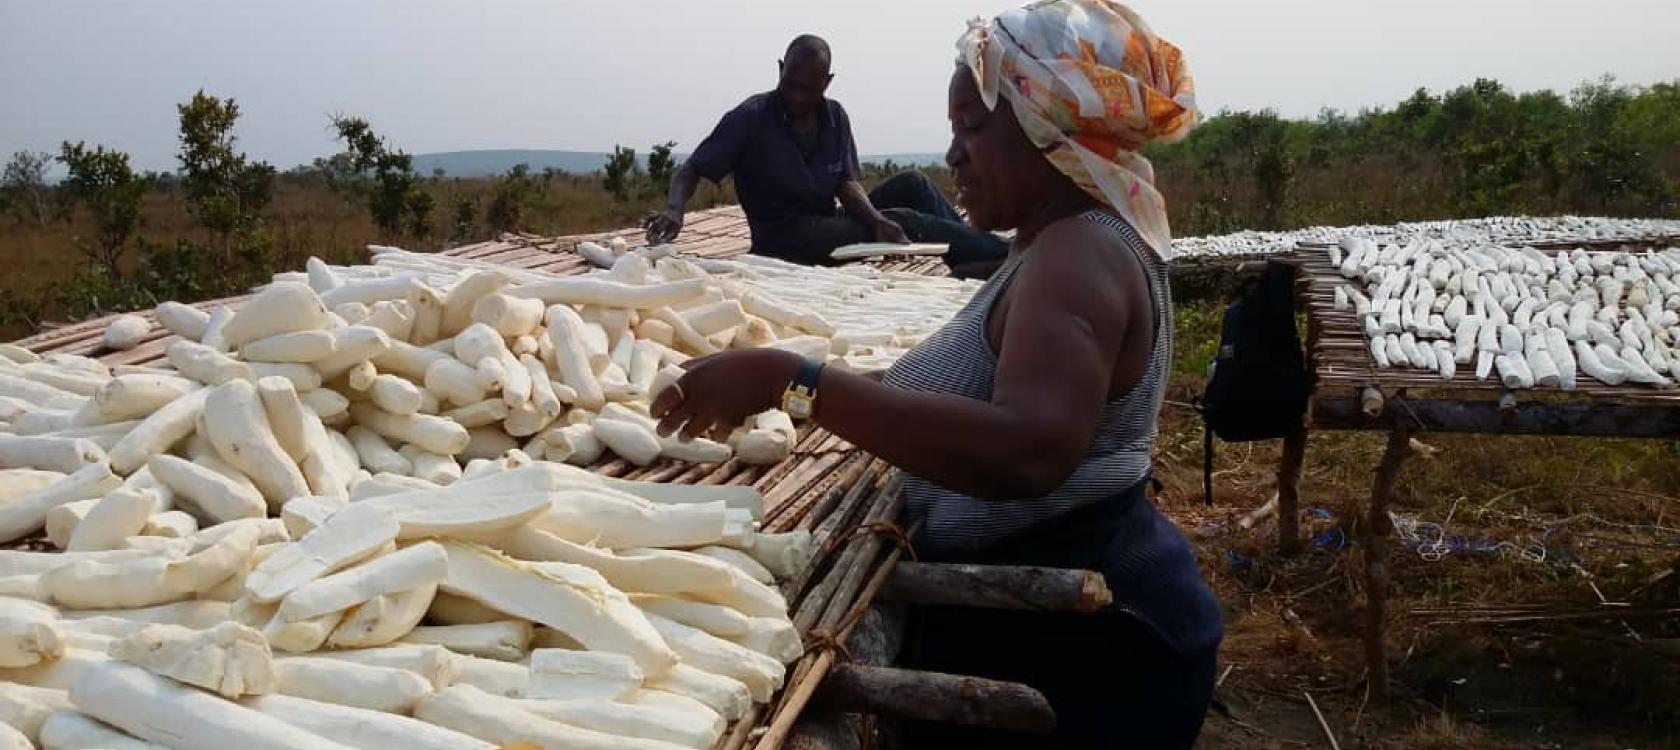 Lire la suite à propos de l’article Marché du manioc : un acteur majeur s’intéresse au développement de la filière en RDC